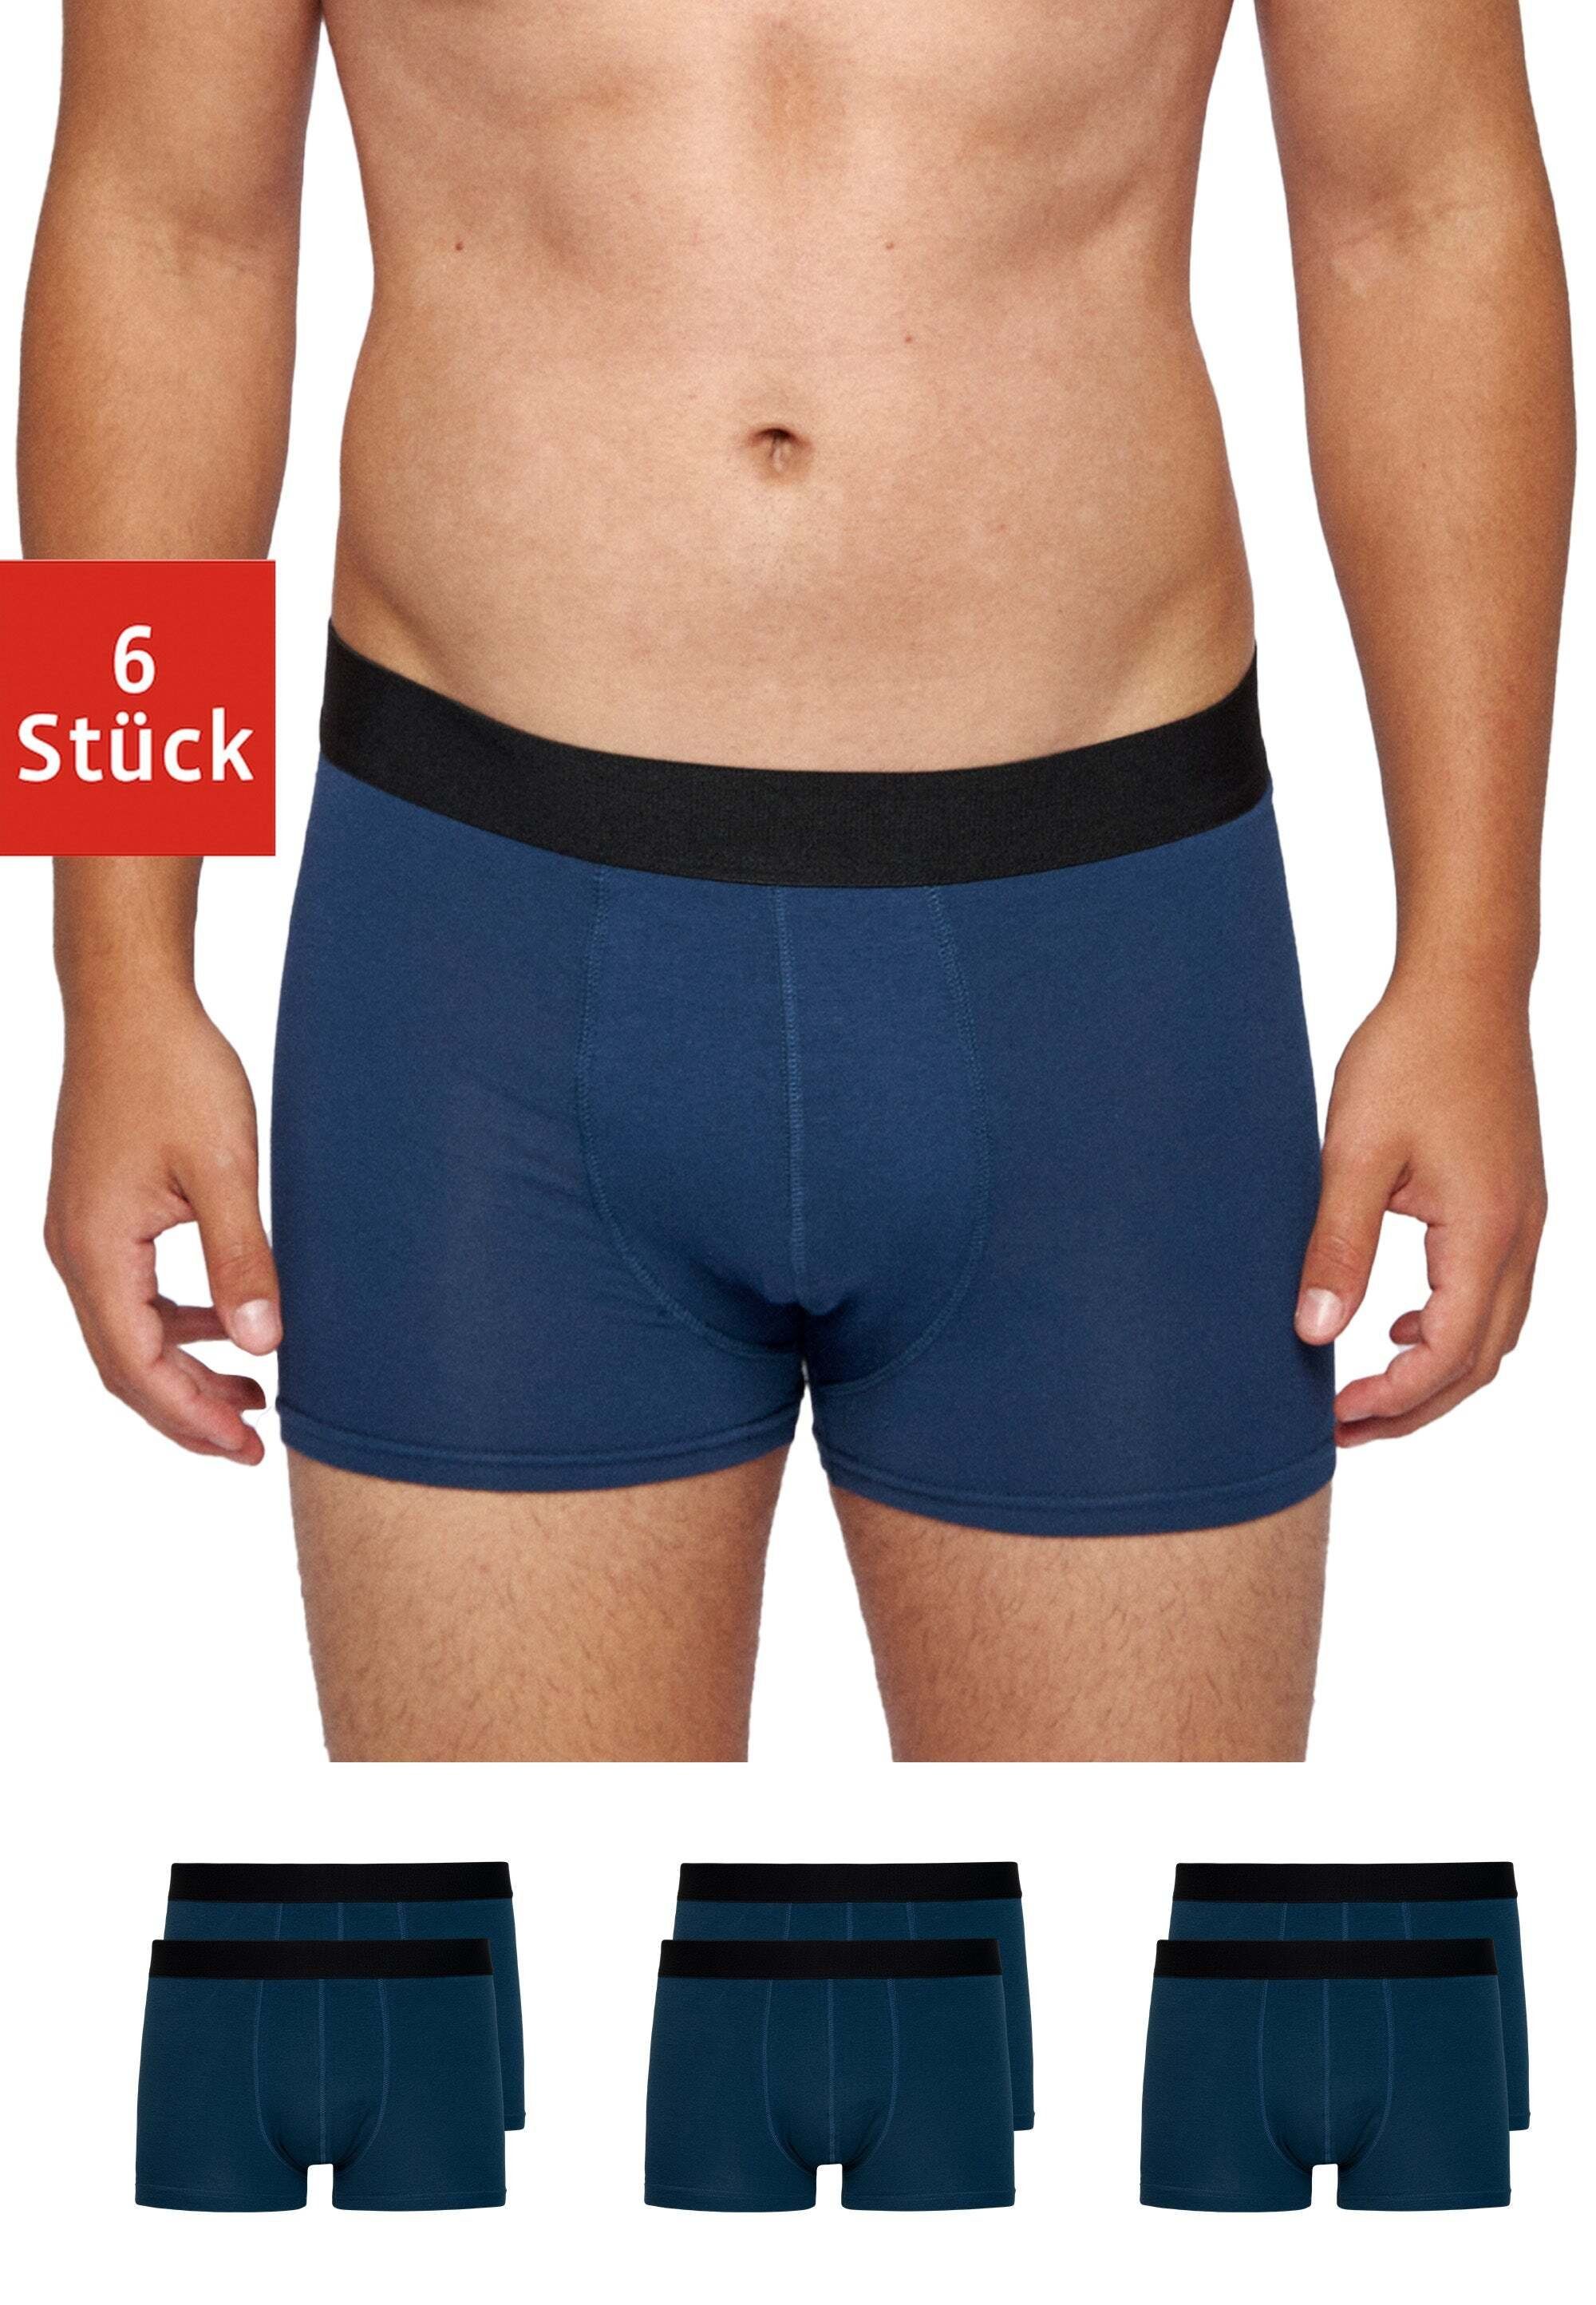 SNOCKS Boxershorts Enge Pants Herren Unterhose ohne Logo (6-St) aus Bio-Baumwolle, ohne kratzenden Zettel